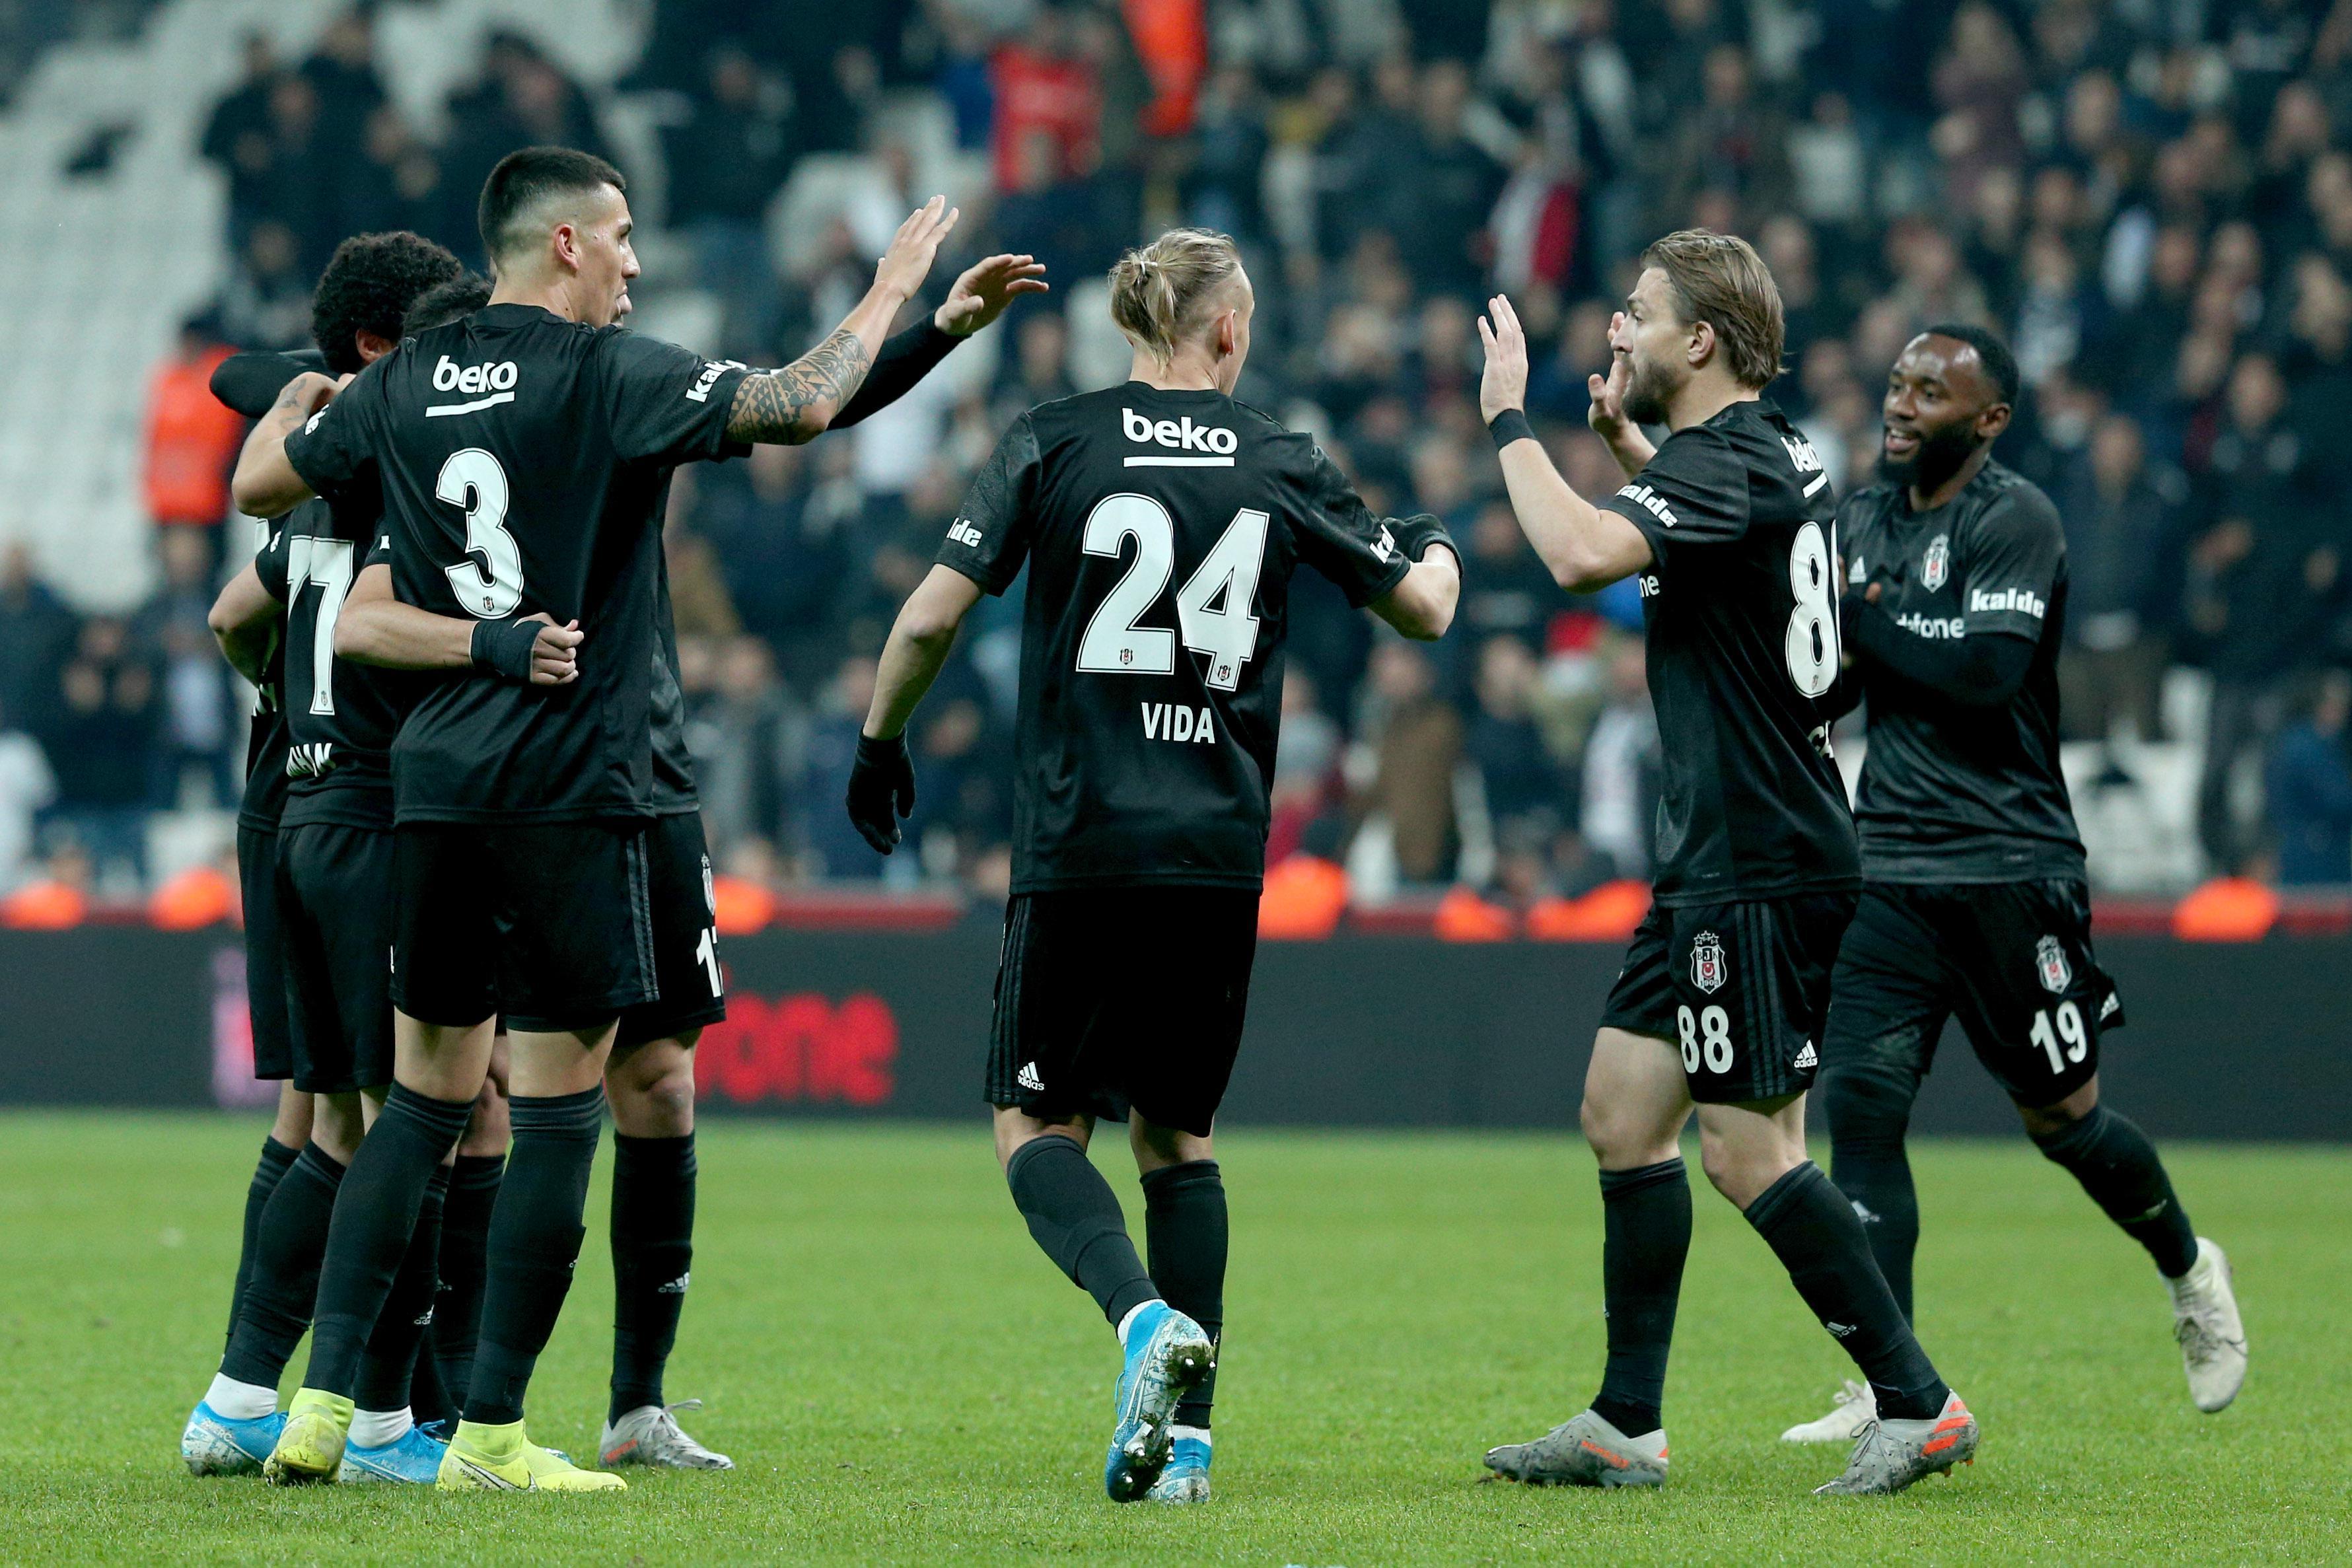 (ÖZET) Beşiktaş-Kayserispor maç sonucu: 4 - 1